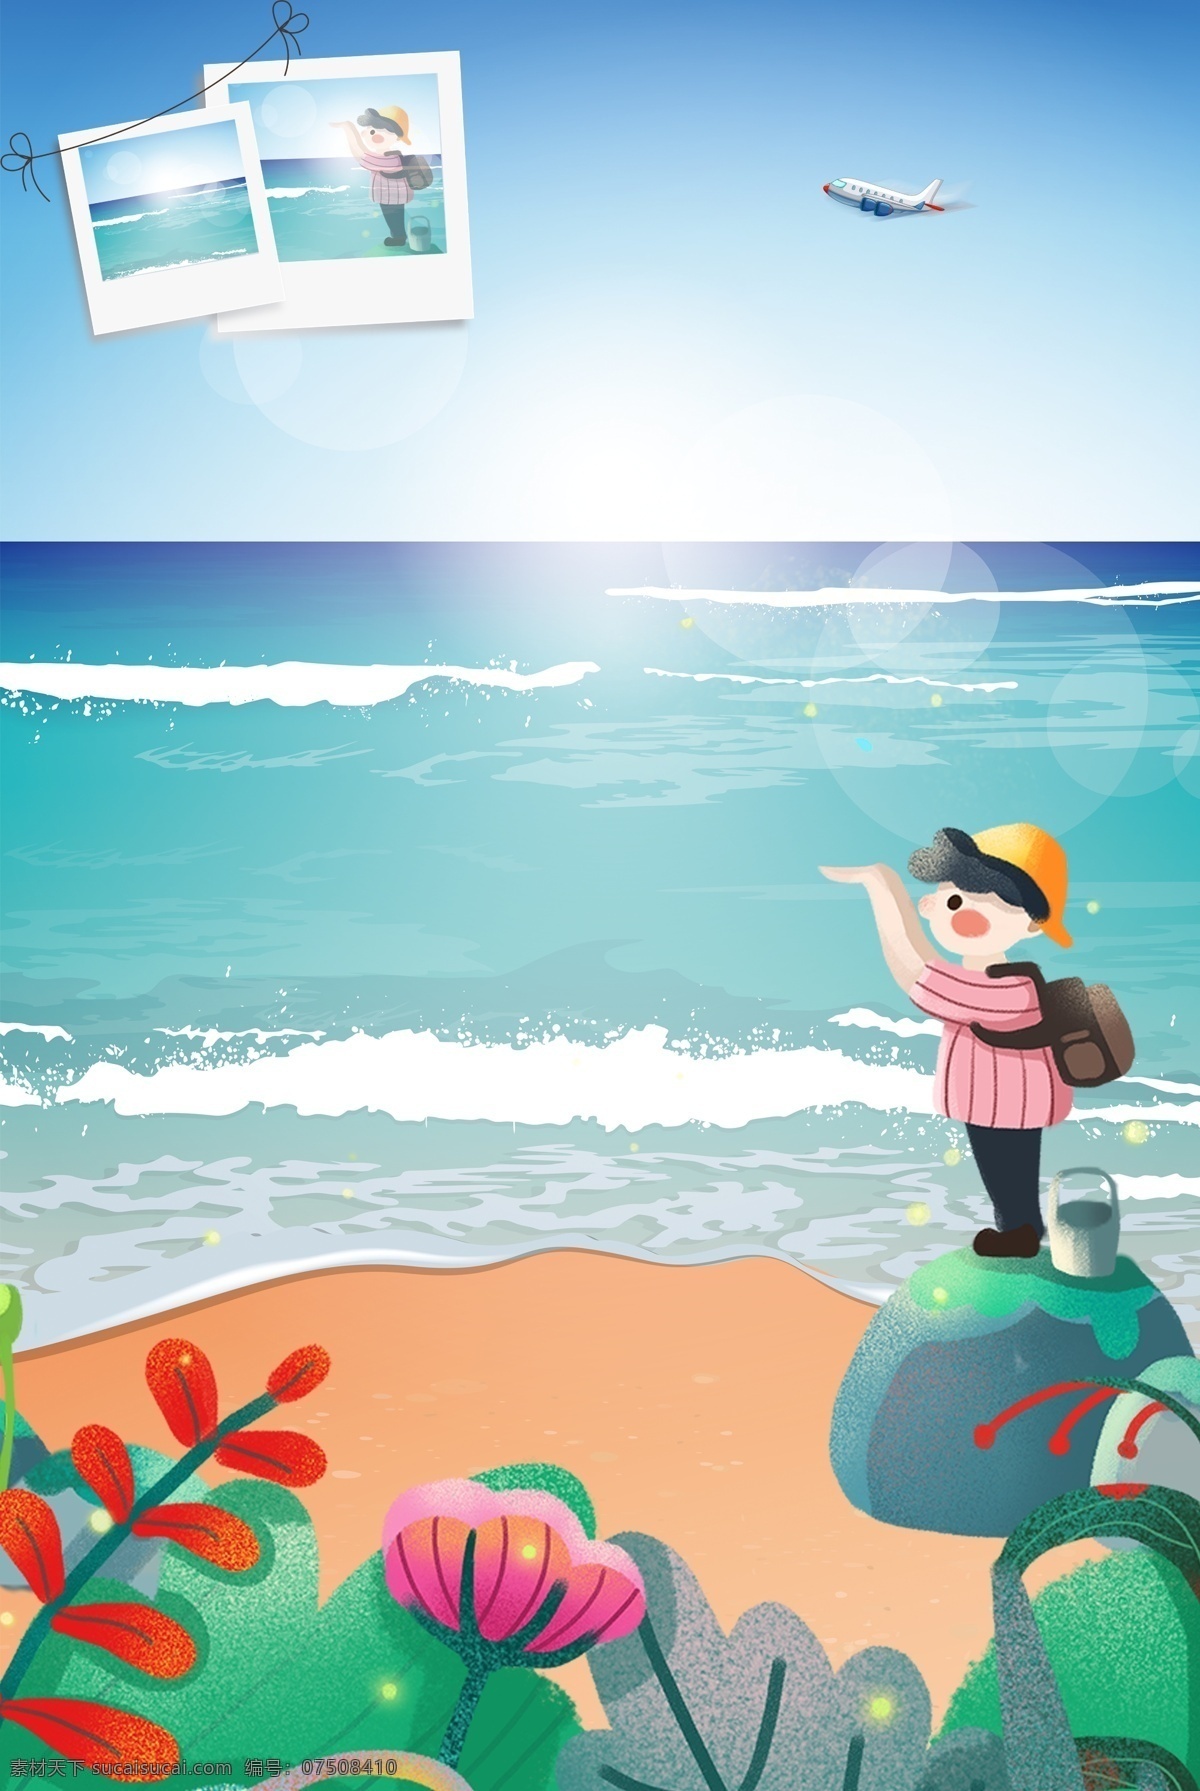 旅游 卡通 背景 合成 海报 照片 大海 海景游 海岛 背包 植物 绿色 创意